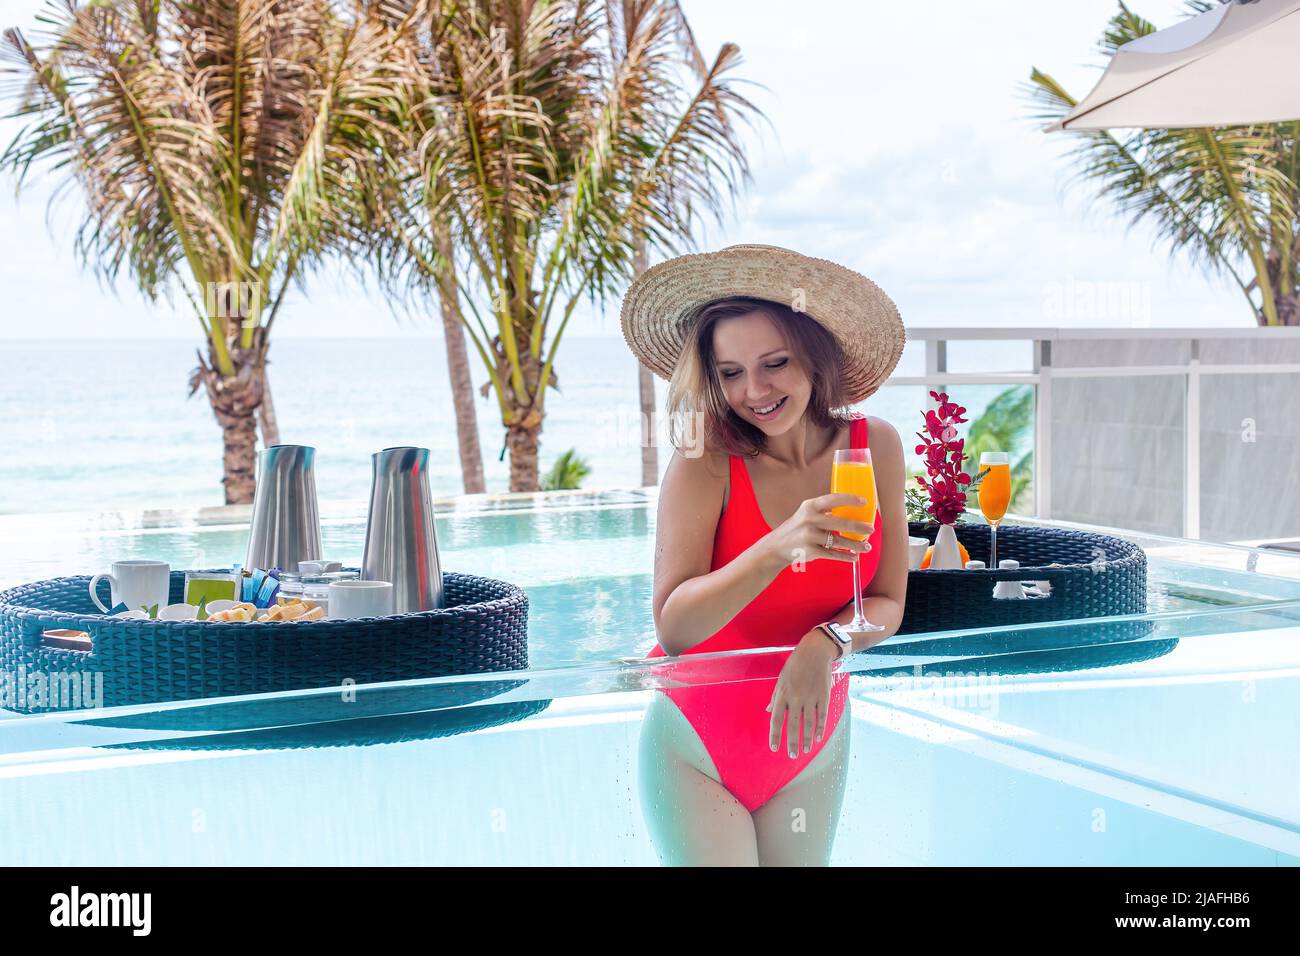 Femme de voyage souriante ou influenceur buvant du jus d'orange dans la piscine transparente à débordement de l'hôtel de luxe. Vacances d'été exotiques sur la plage Banque D'Images